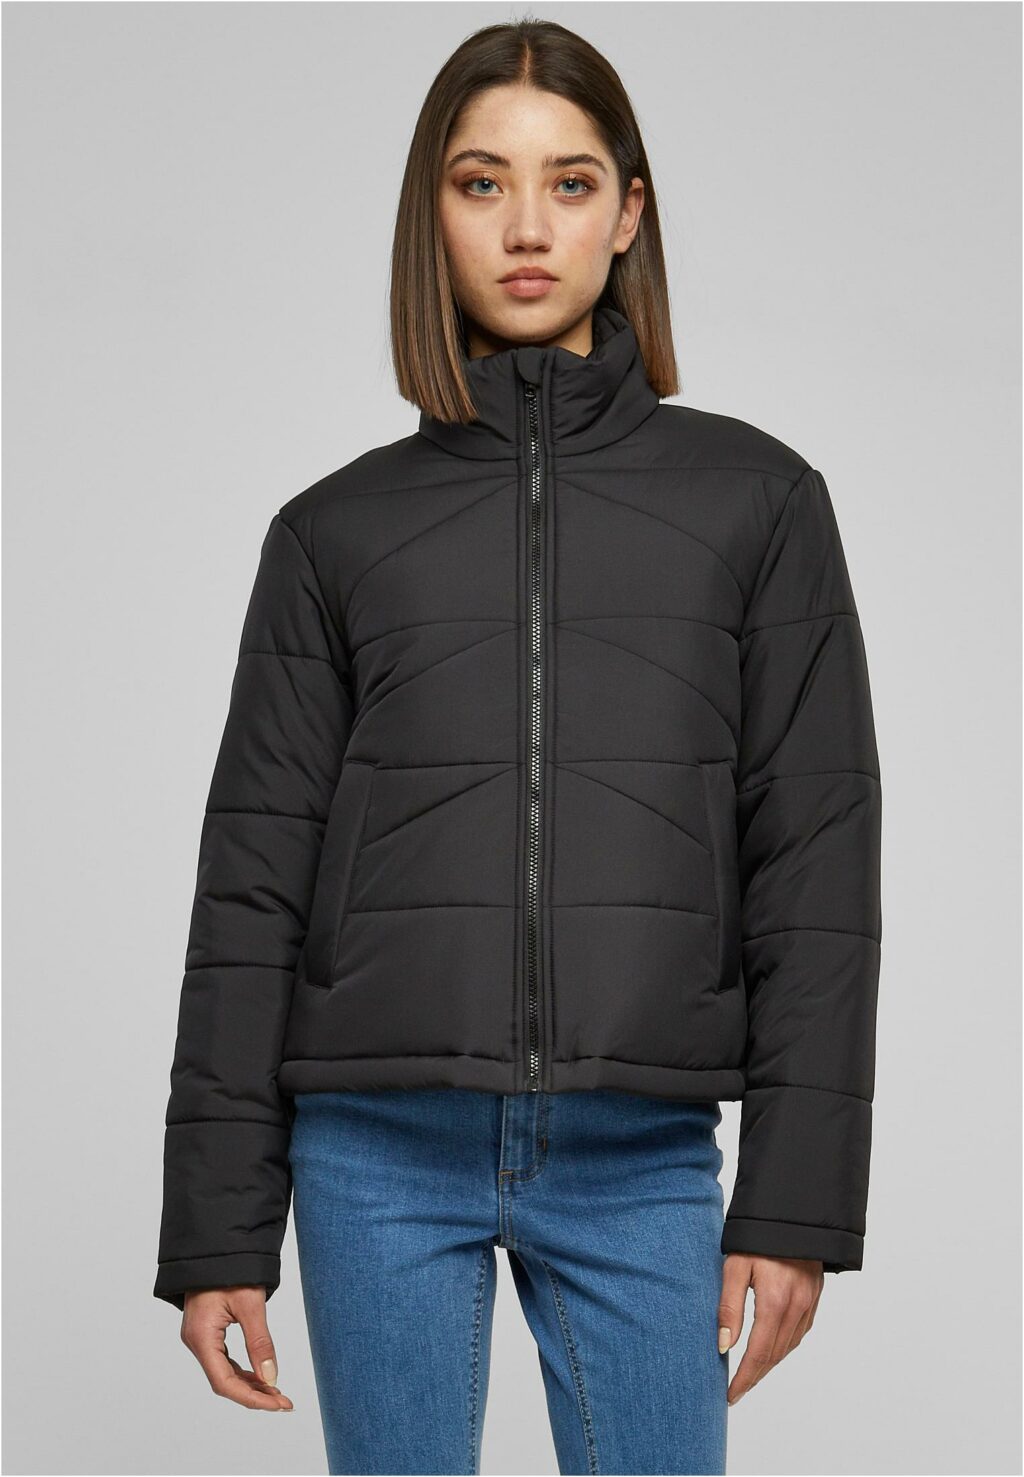 Urban Classics Ladies Arrow Puffer Jacket black TB6074